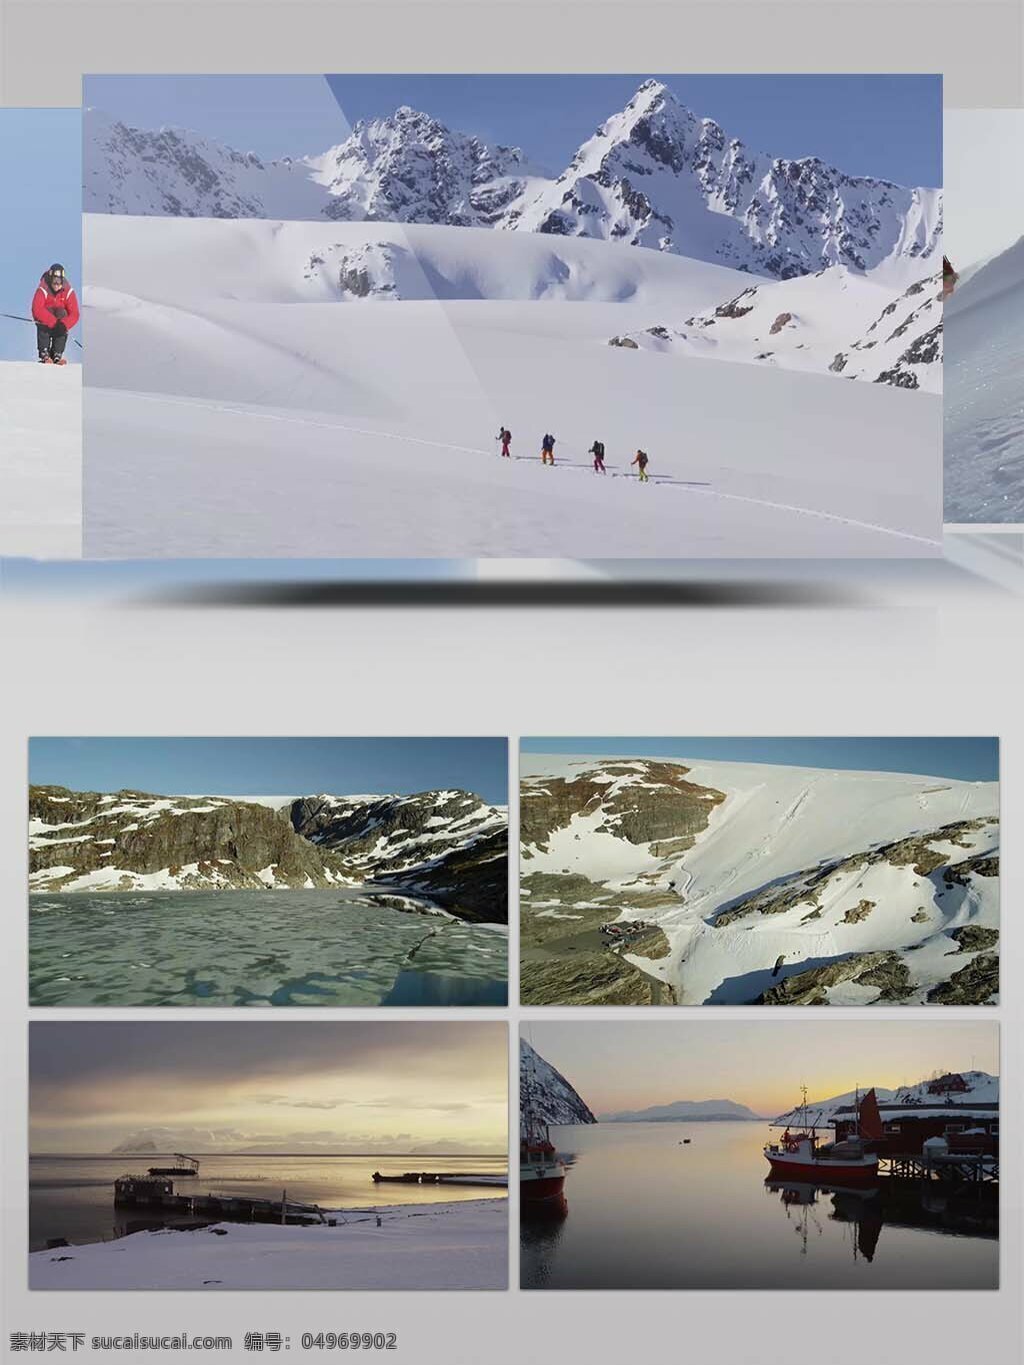 4k 超 清 实拍 滑雪 运动 视频 广告 滑雪竞技 滑雪镜头 滑雪视频 滑雪运动 极限滑雪 极限运动 体育运动 宣传片 雪山 影视 专题片